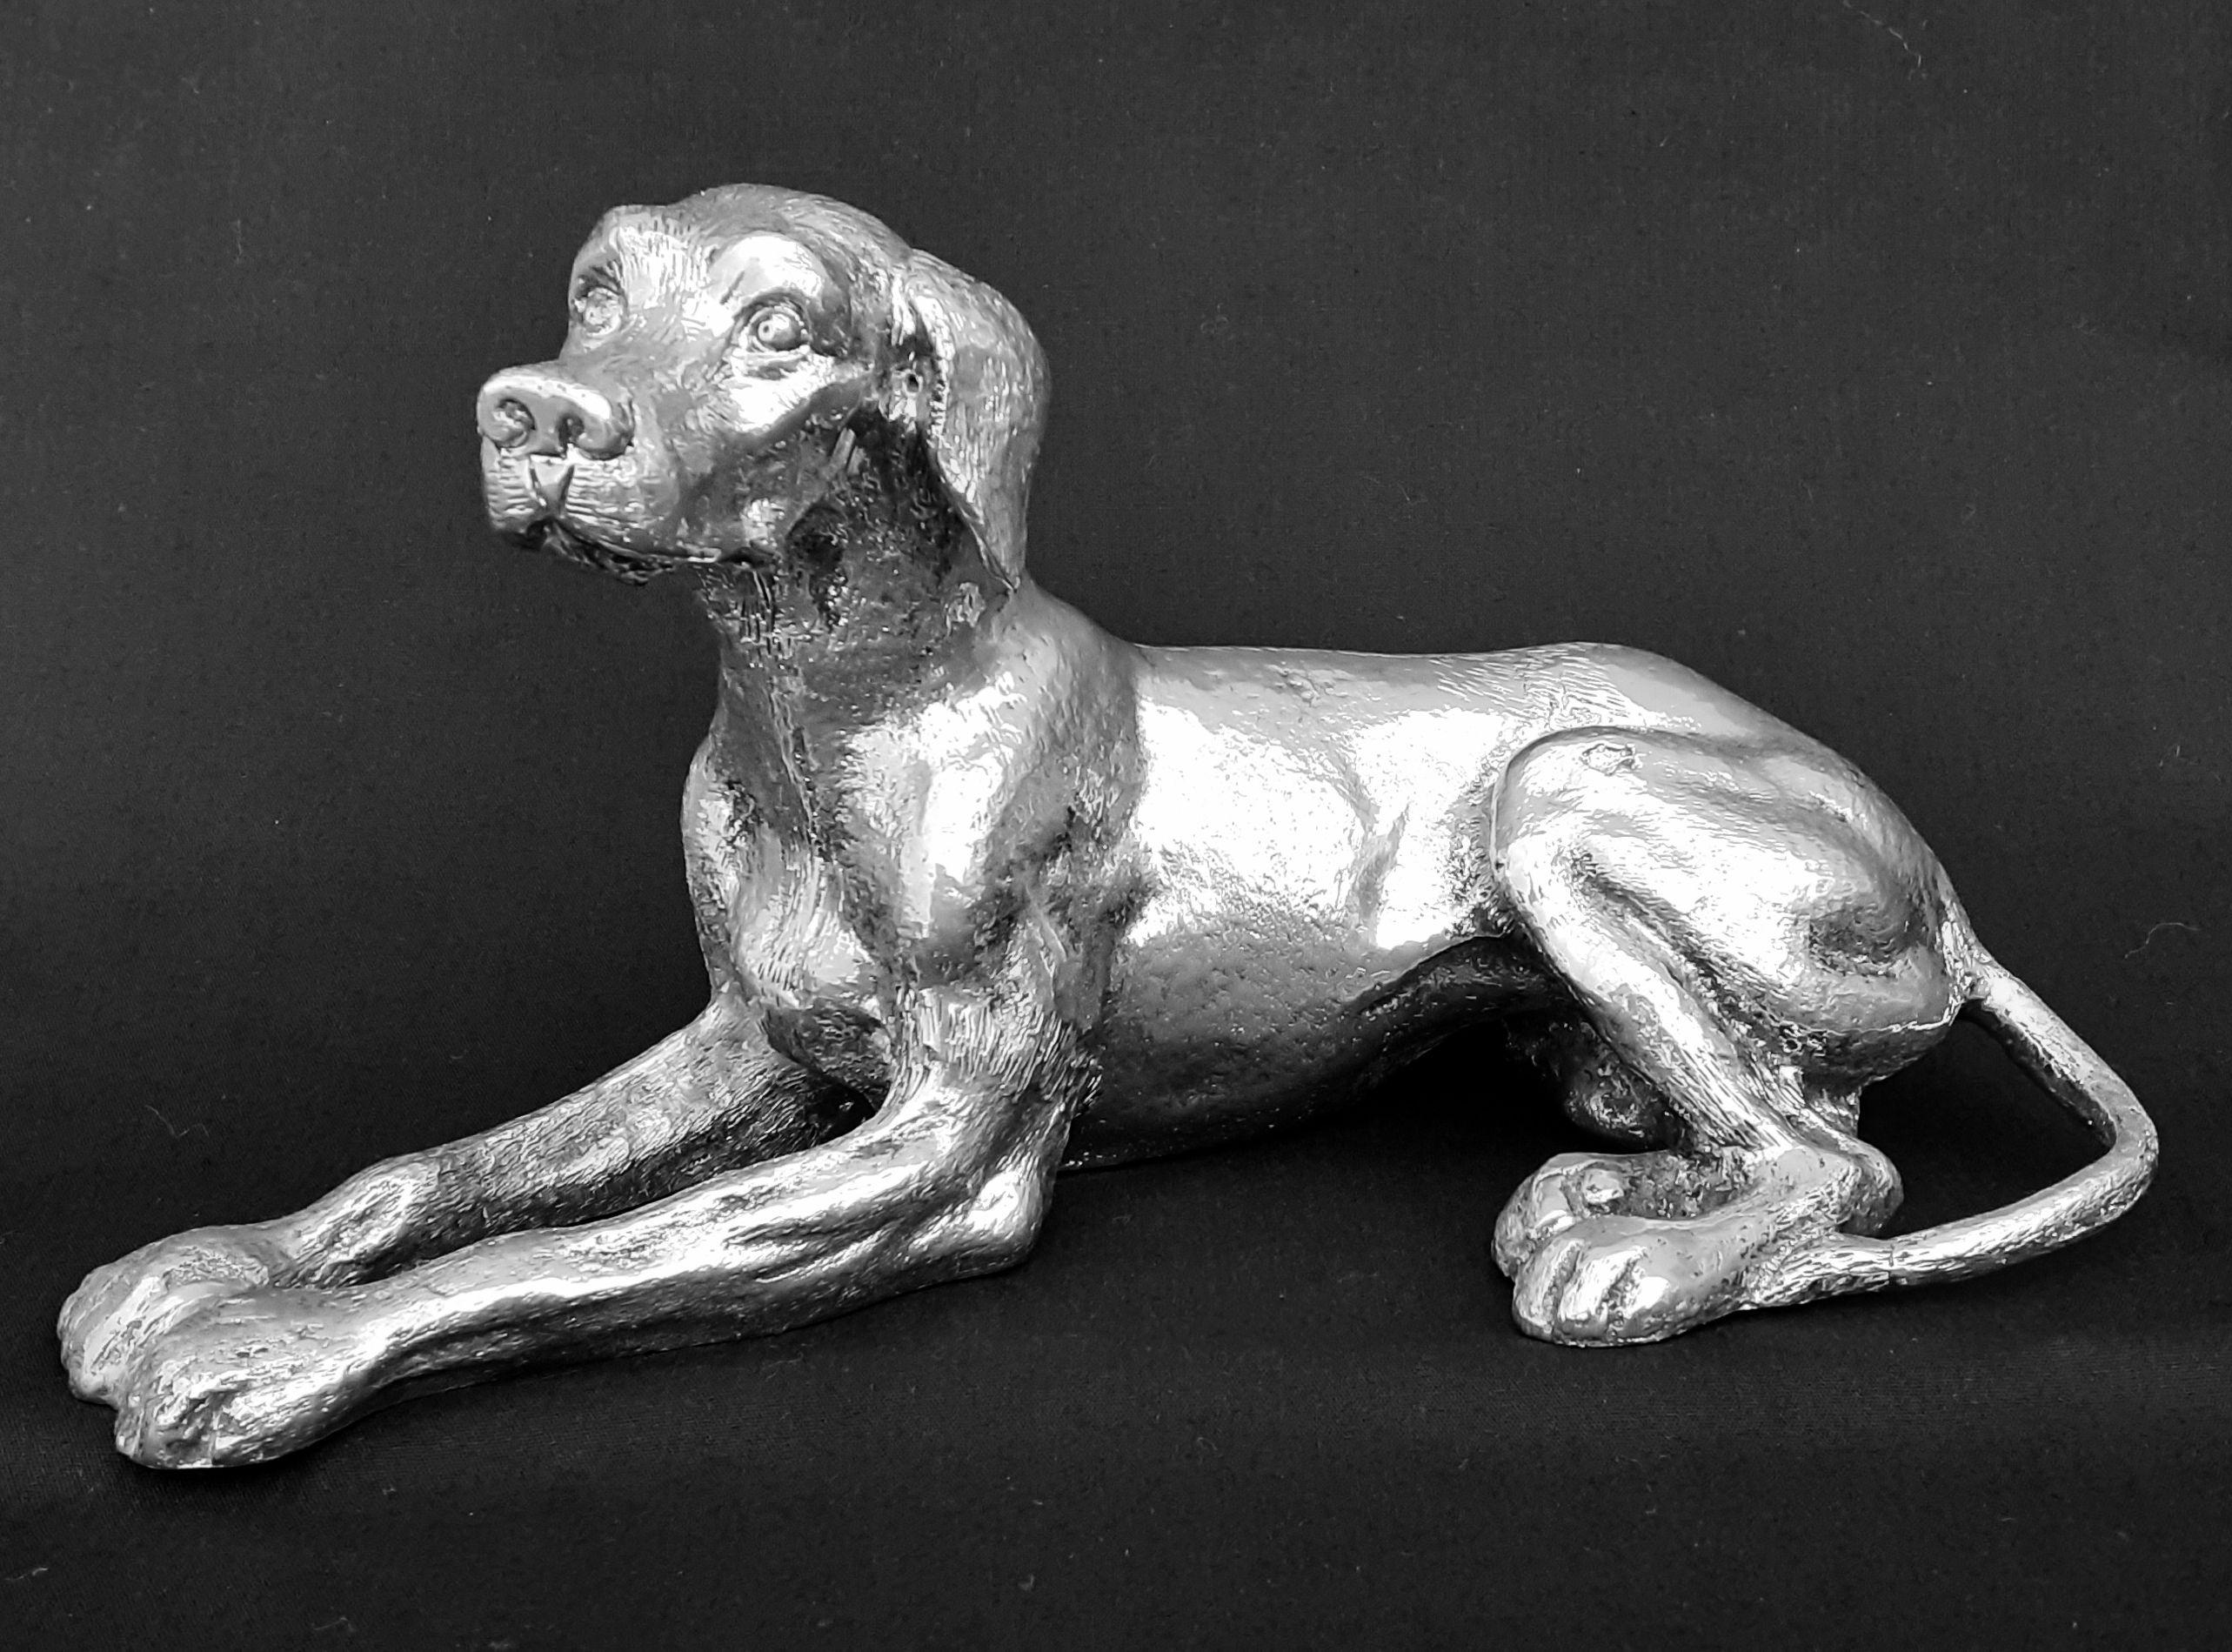 Superbe et rare Bronze Authentique de Gucci

Forme d'un chien couché

Article vintage des années 70/80

En bronze

Coloris : argenté

